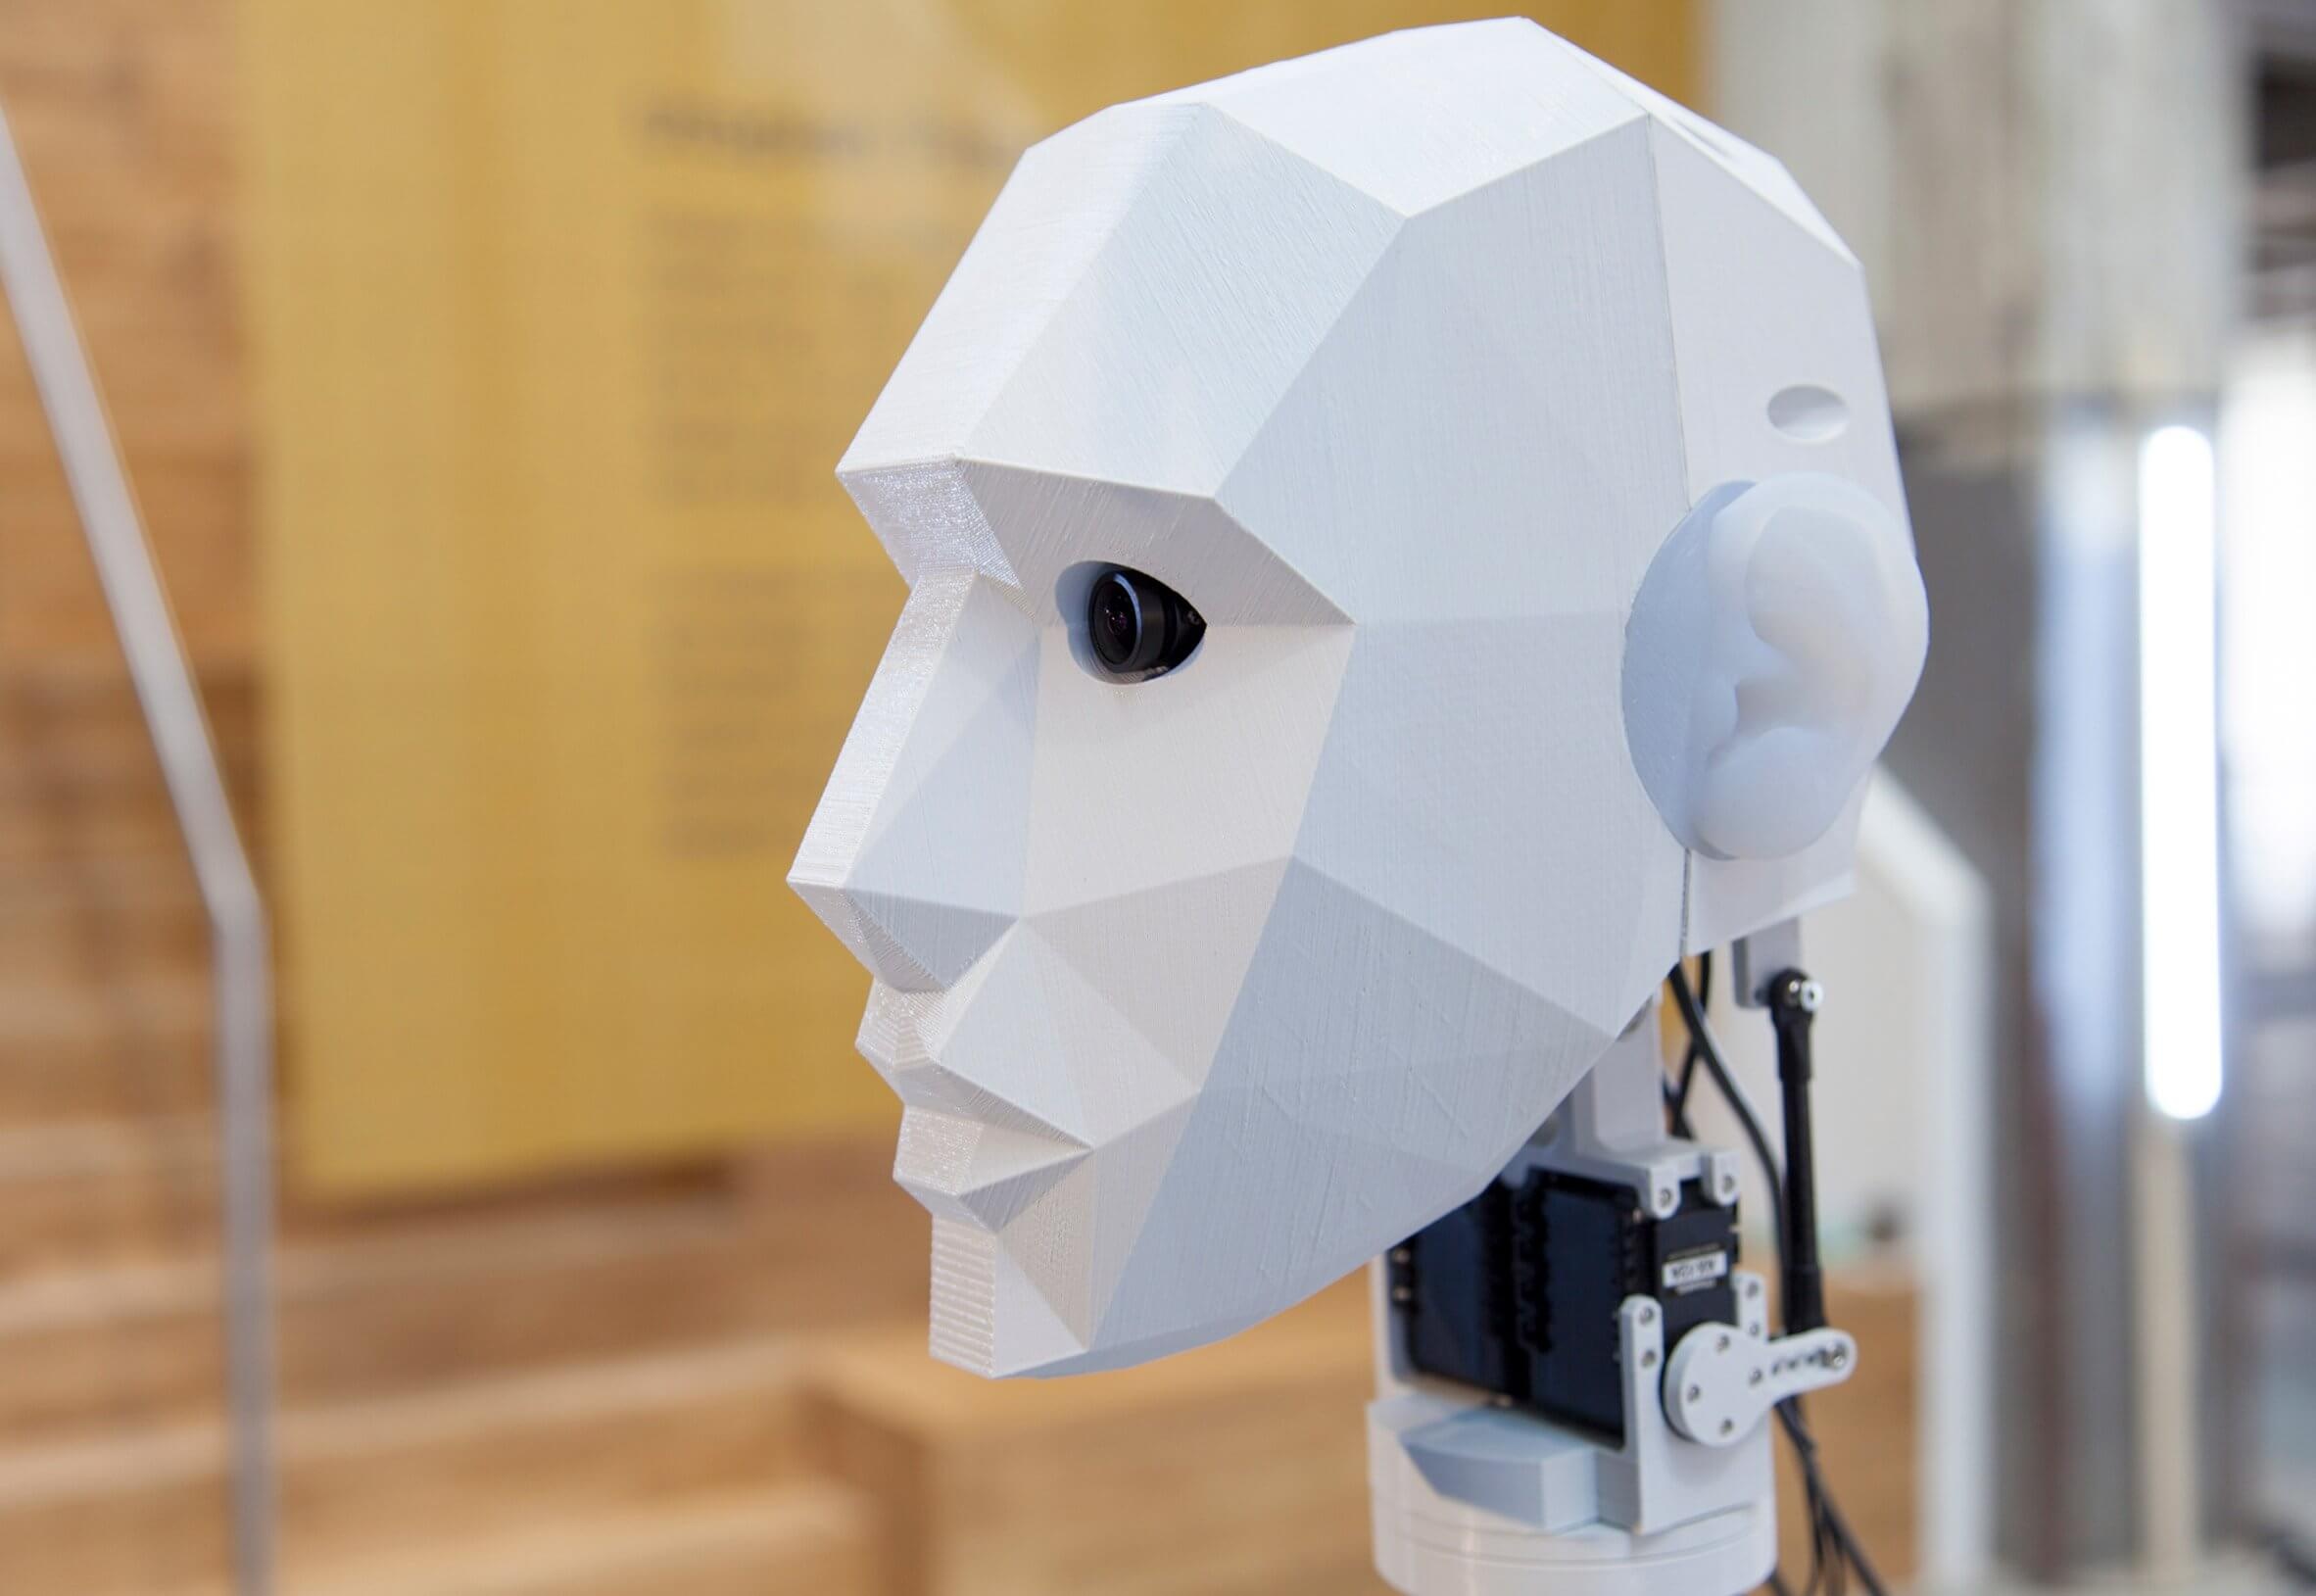 New session. Голова робота с камерами. Робот с кафрой на голове. Роботизированная головка для видеокамер. Робот с небольшой камерой на голове.